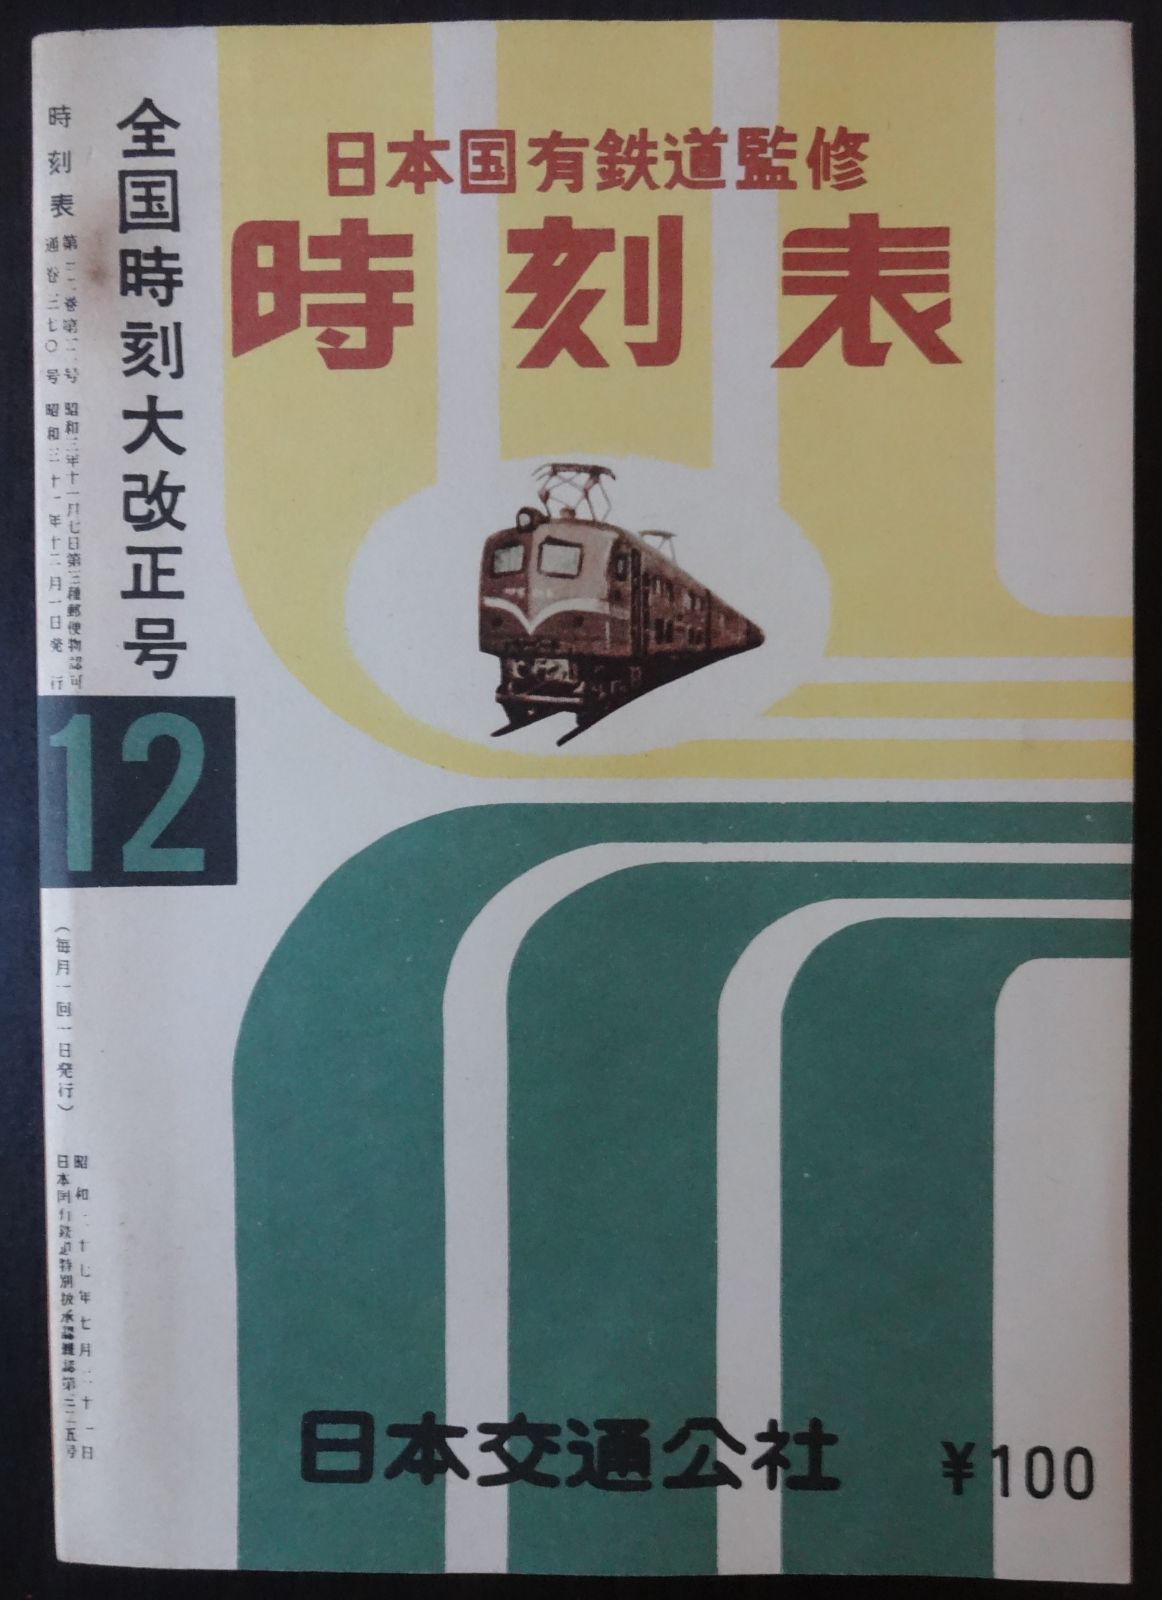 時刻表復刻版（戦後編） 日本交通公社 1977年発行 - 鉄道古書 交通文化